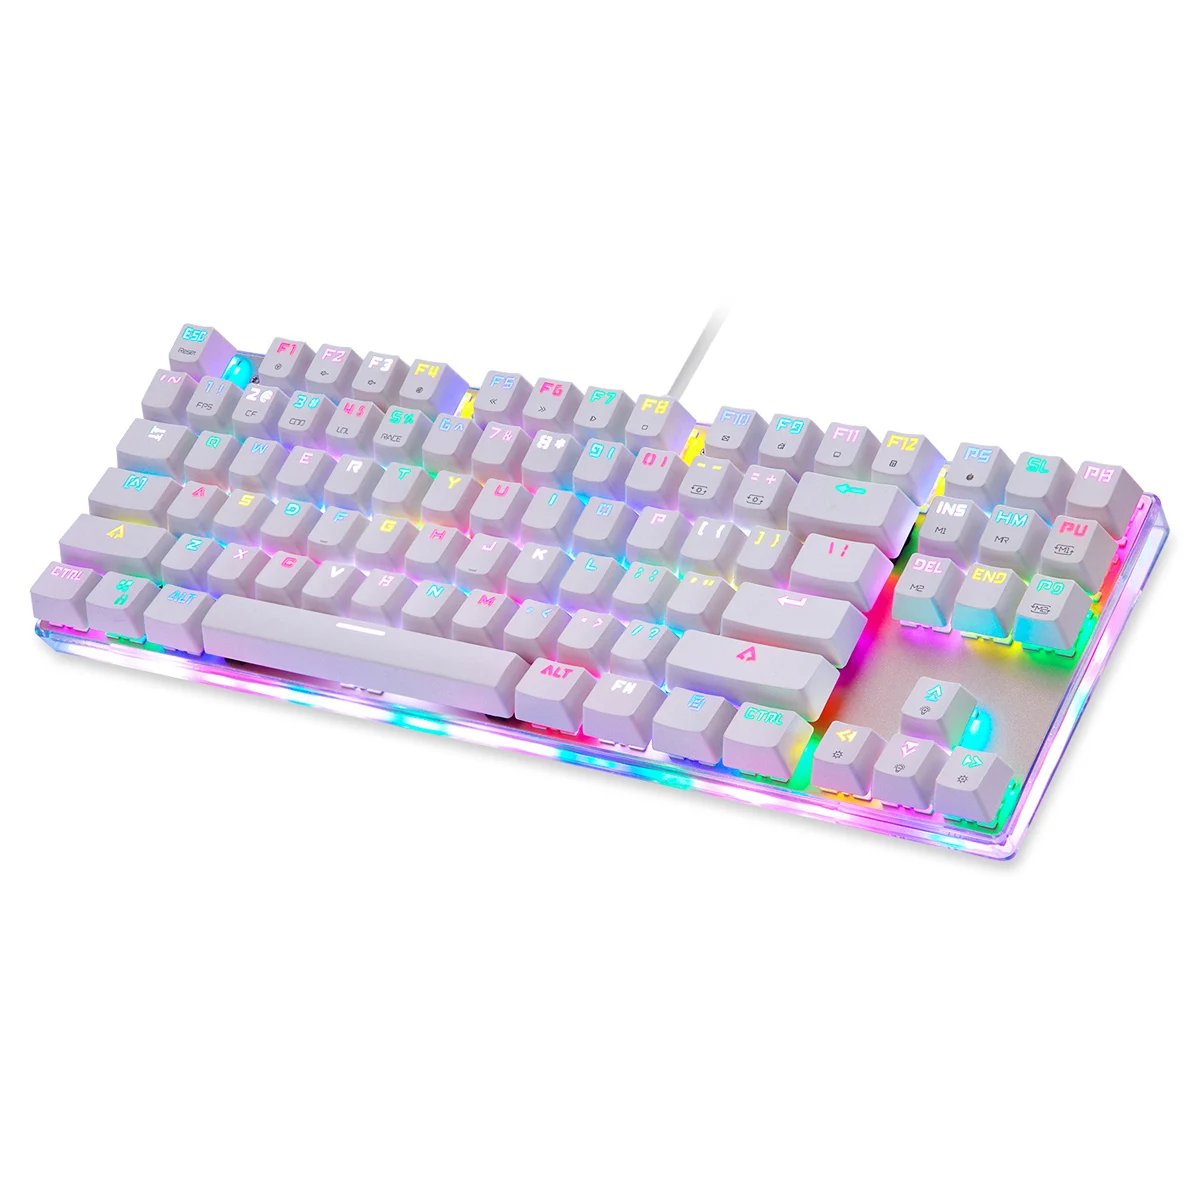 K87S Высококачественная Белая Механическая игровая клавиатура Проводная 87 клавиш RGB подсветка американская клавиатура